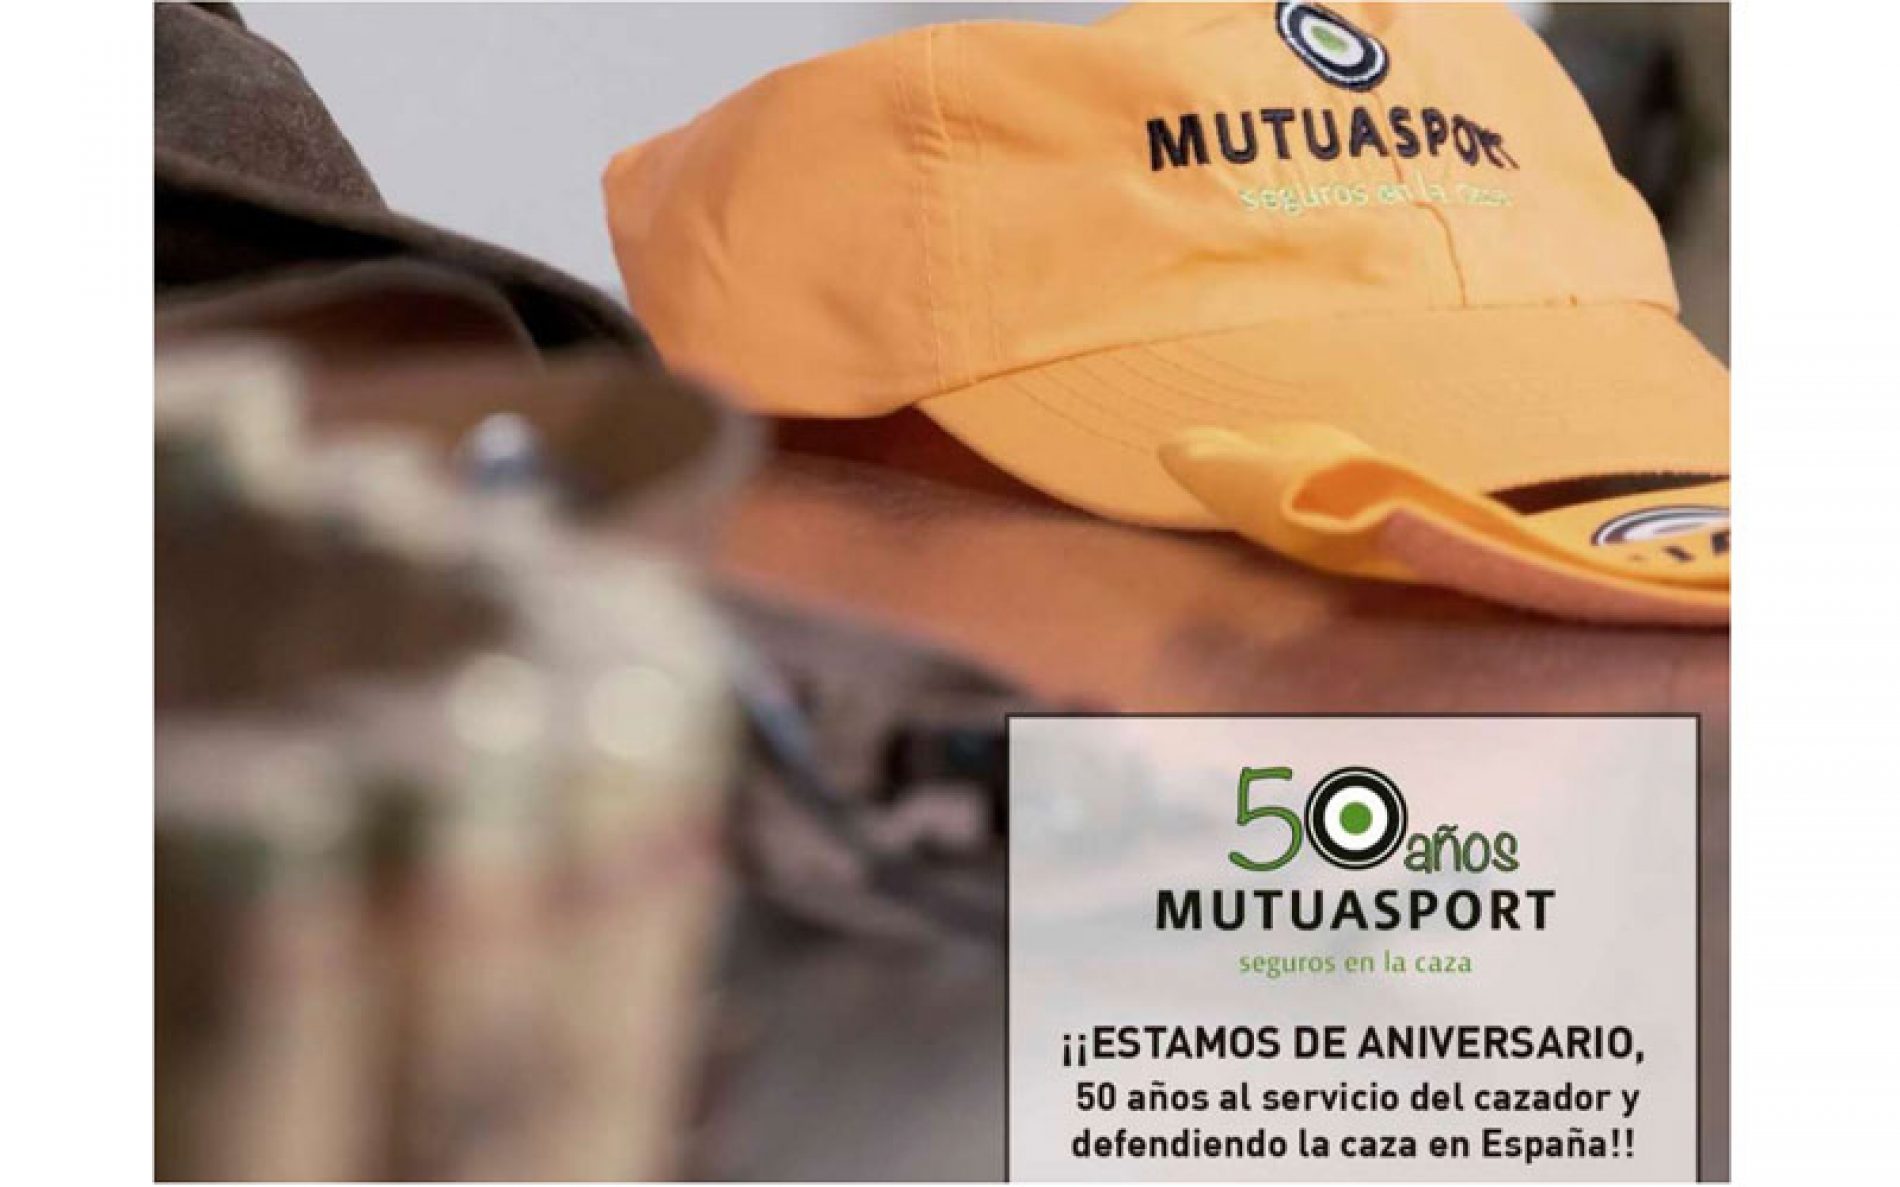 Mutuasport celebra sus 50 años y lanza un vídeo de caza conmemorativo